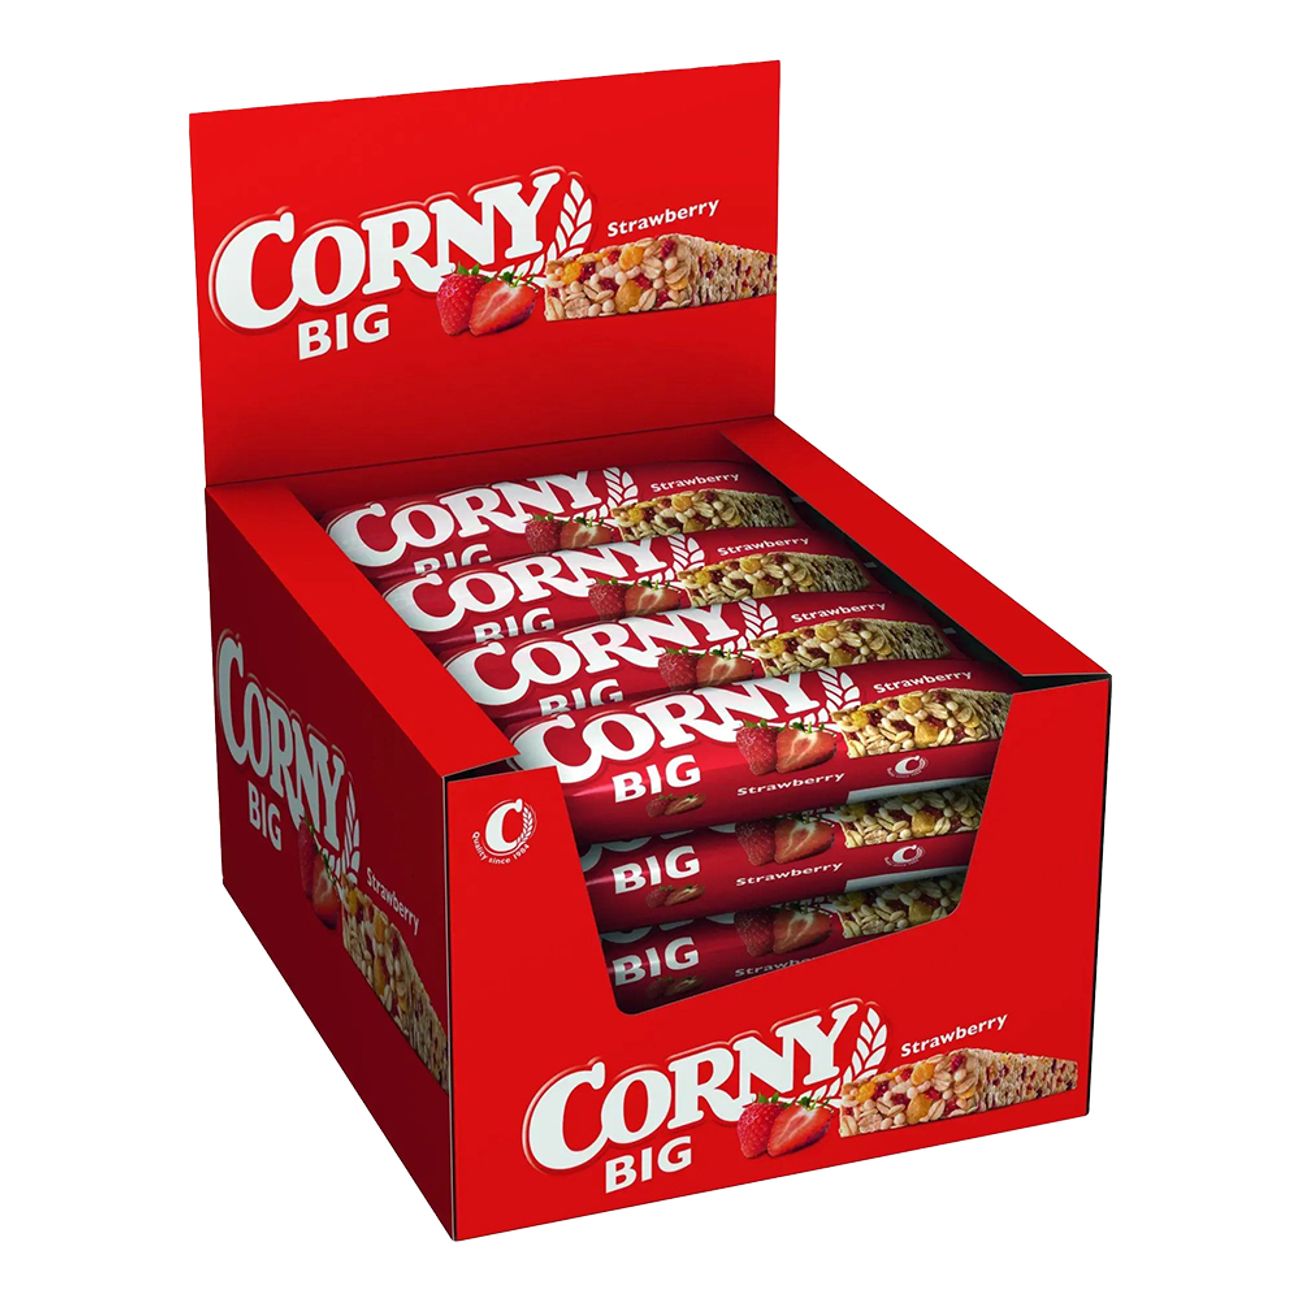 corny-big-strawberry-storpack-89014-2